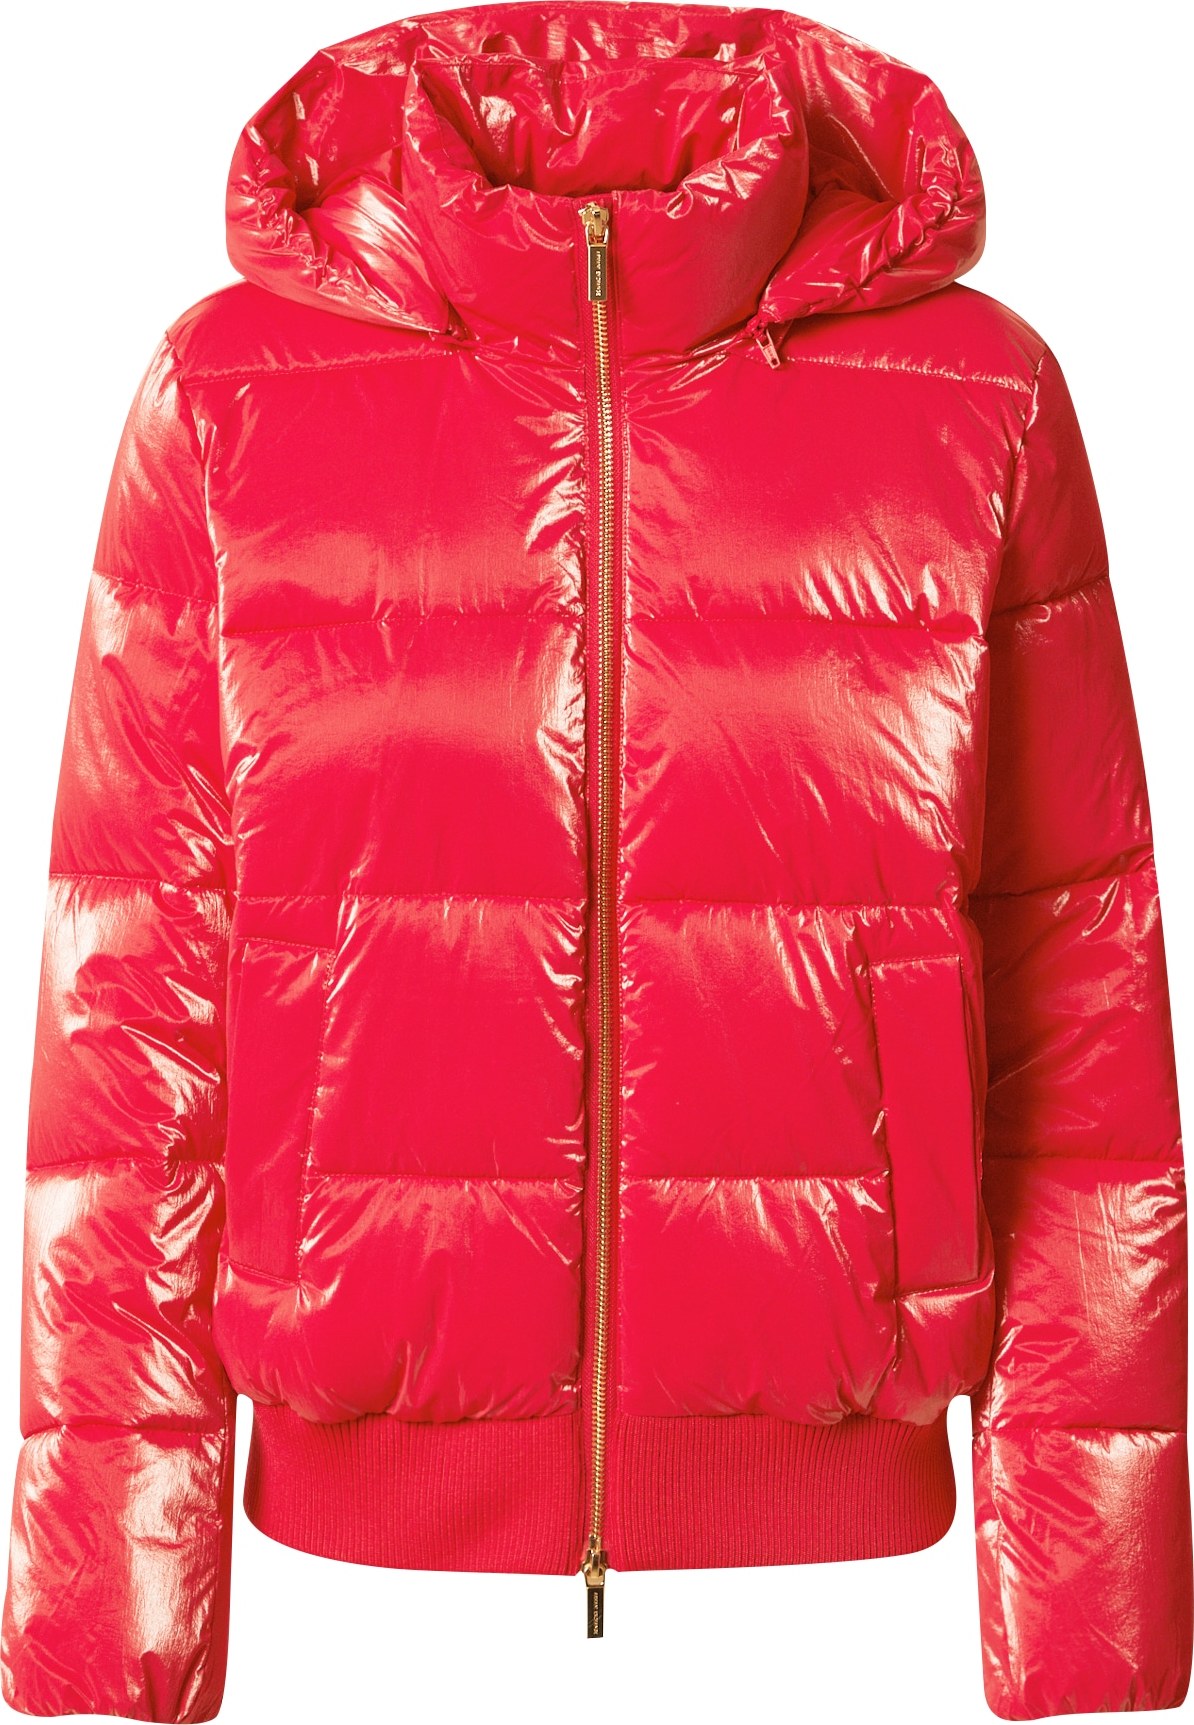 ARMANI EXCHANGE Zimní bunda červená